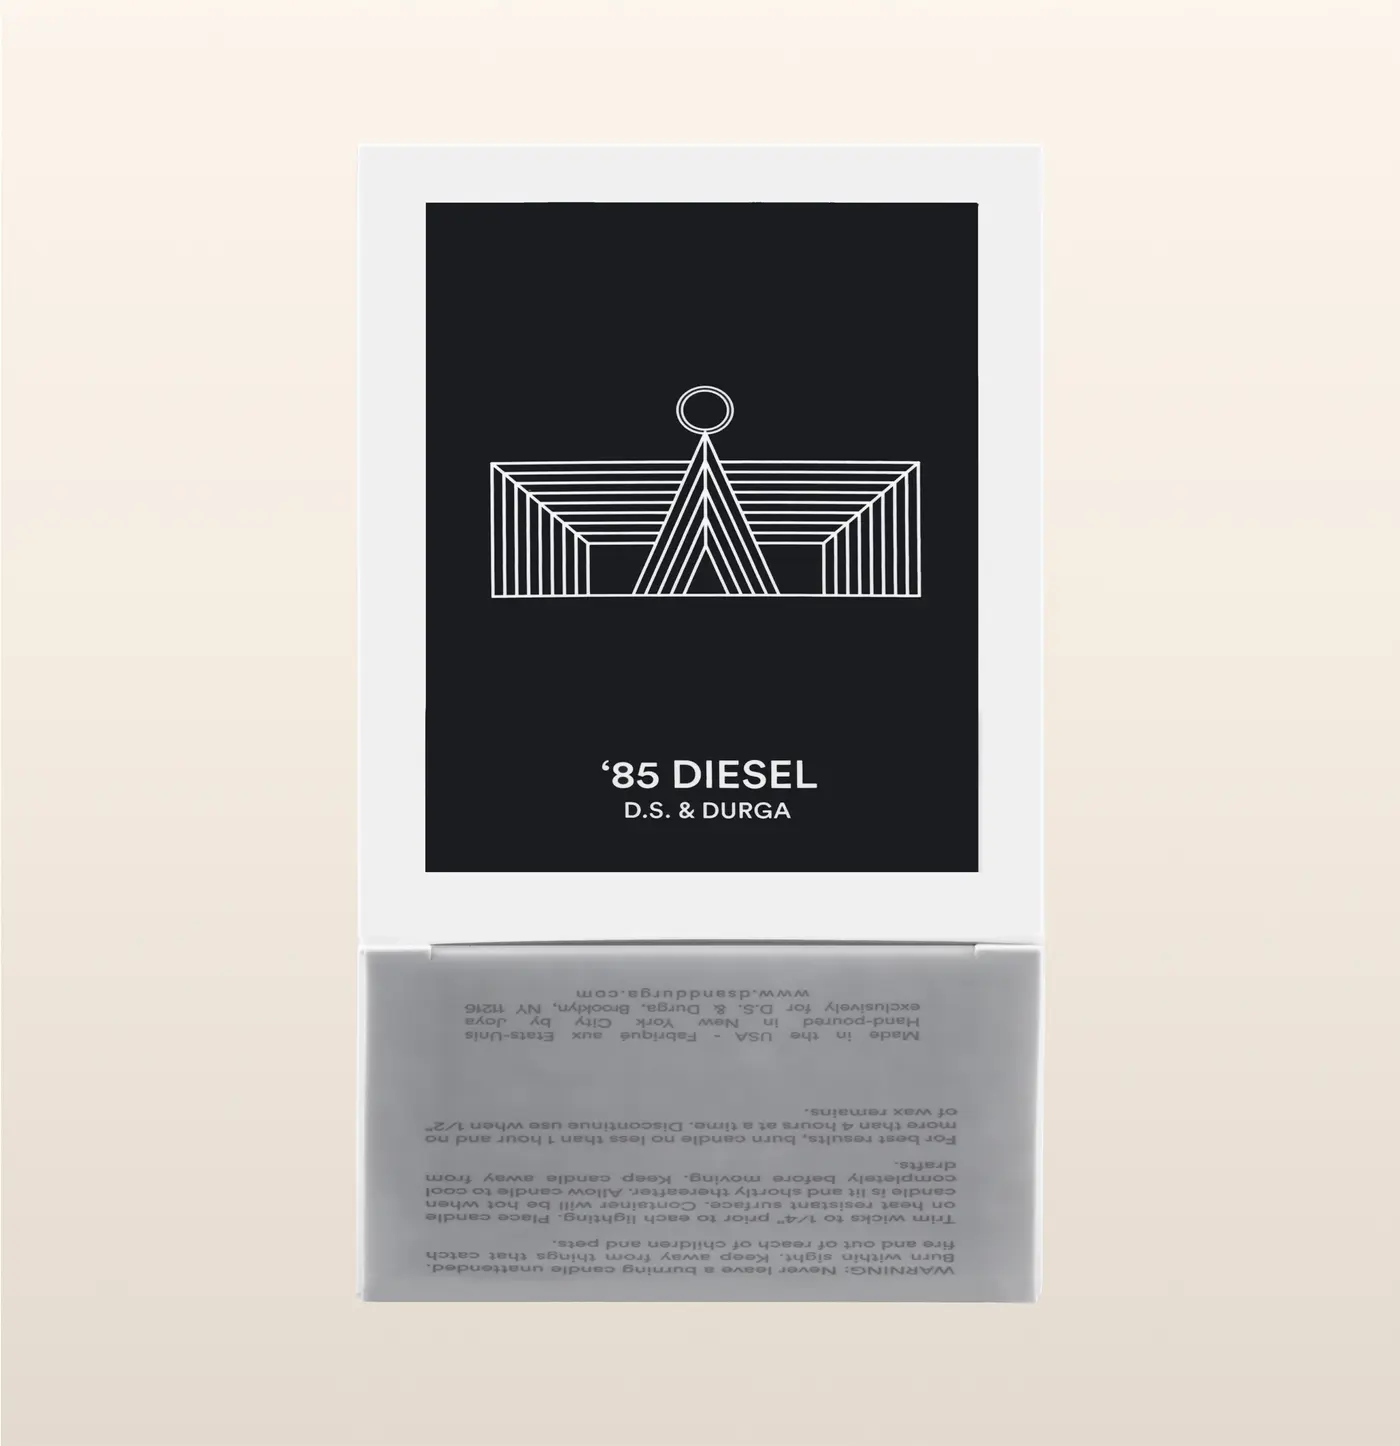 '85 Diesel by D.S. & Durga